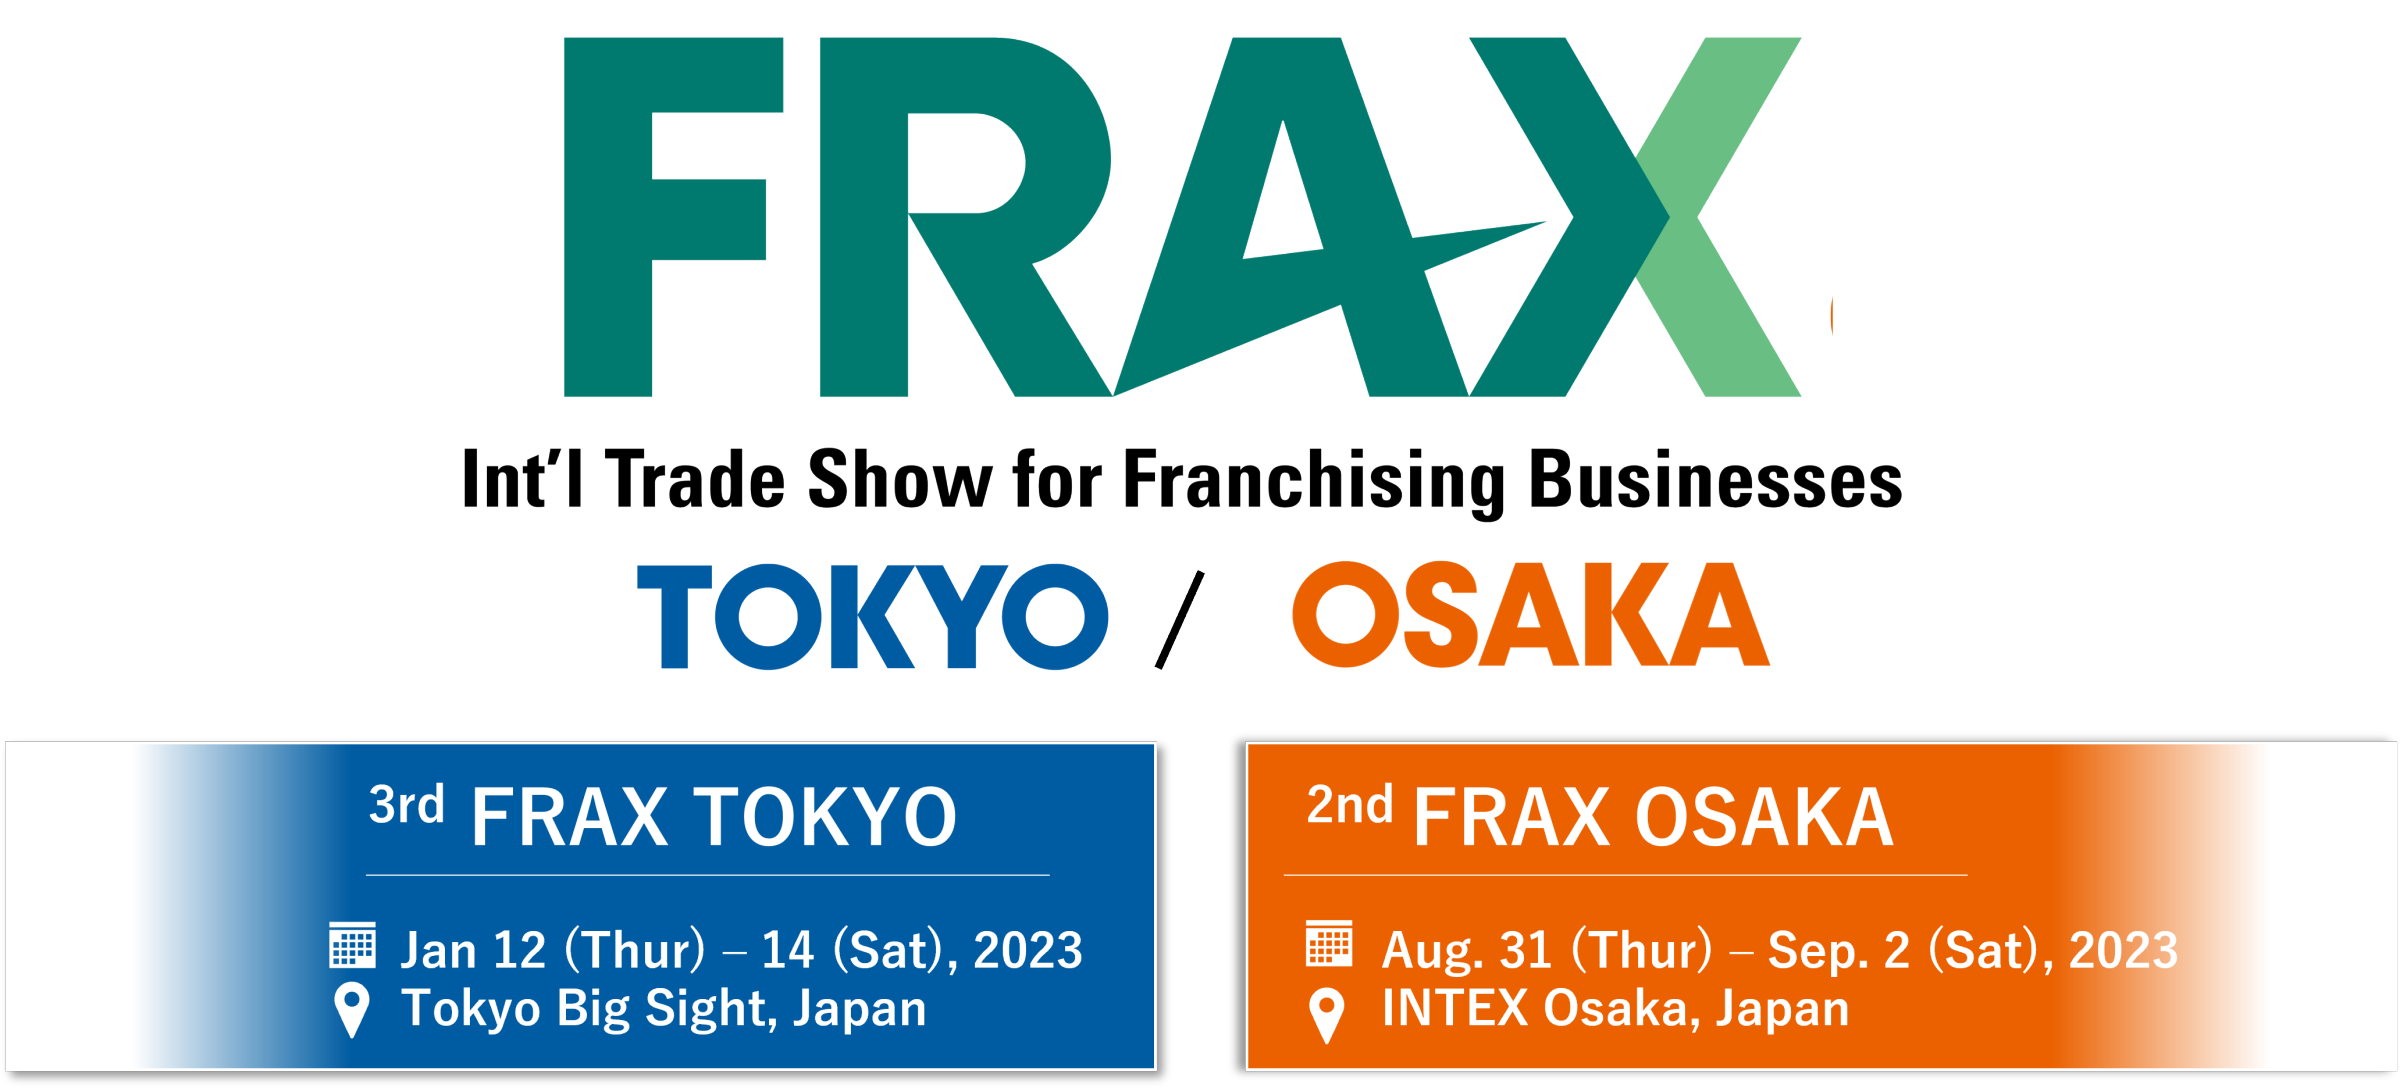 FRAX Franchise Business Platform